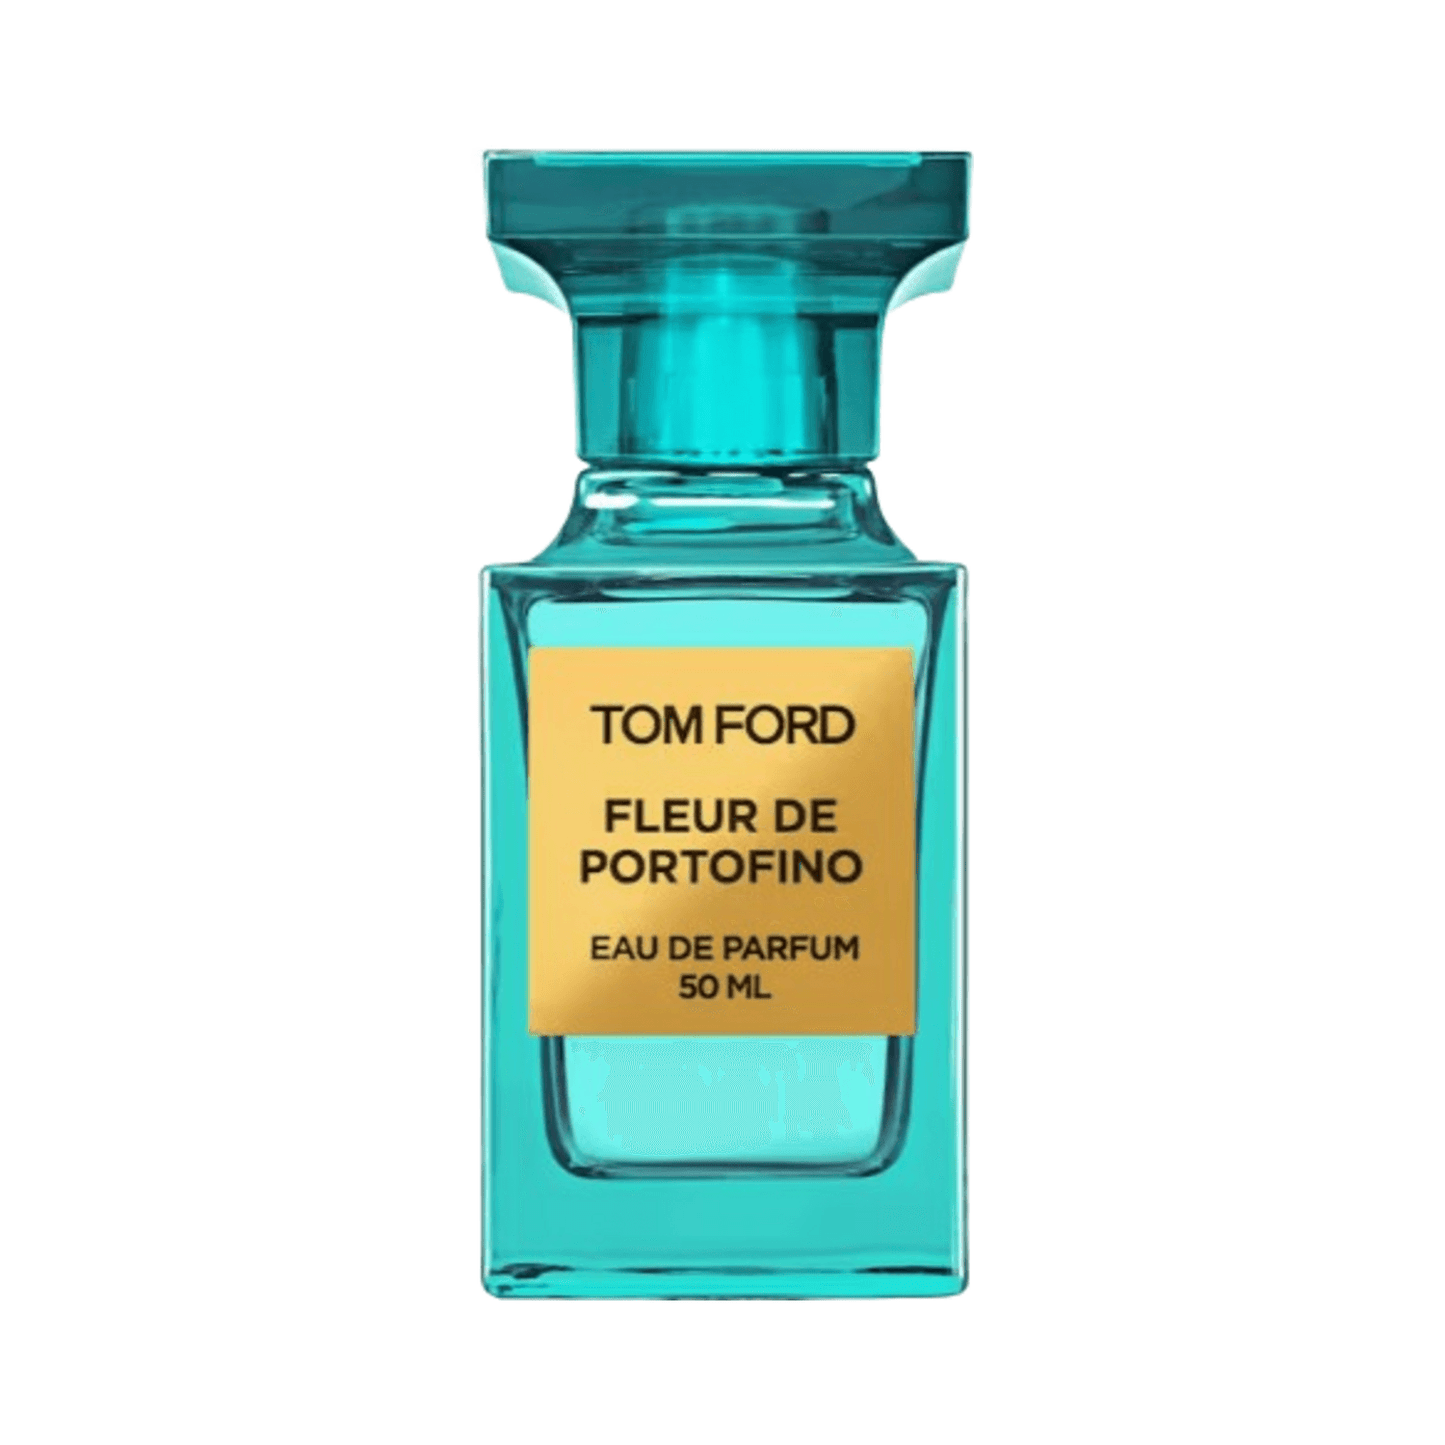 Tom Ford Fleur De Portofino Eau De Parfum